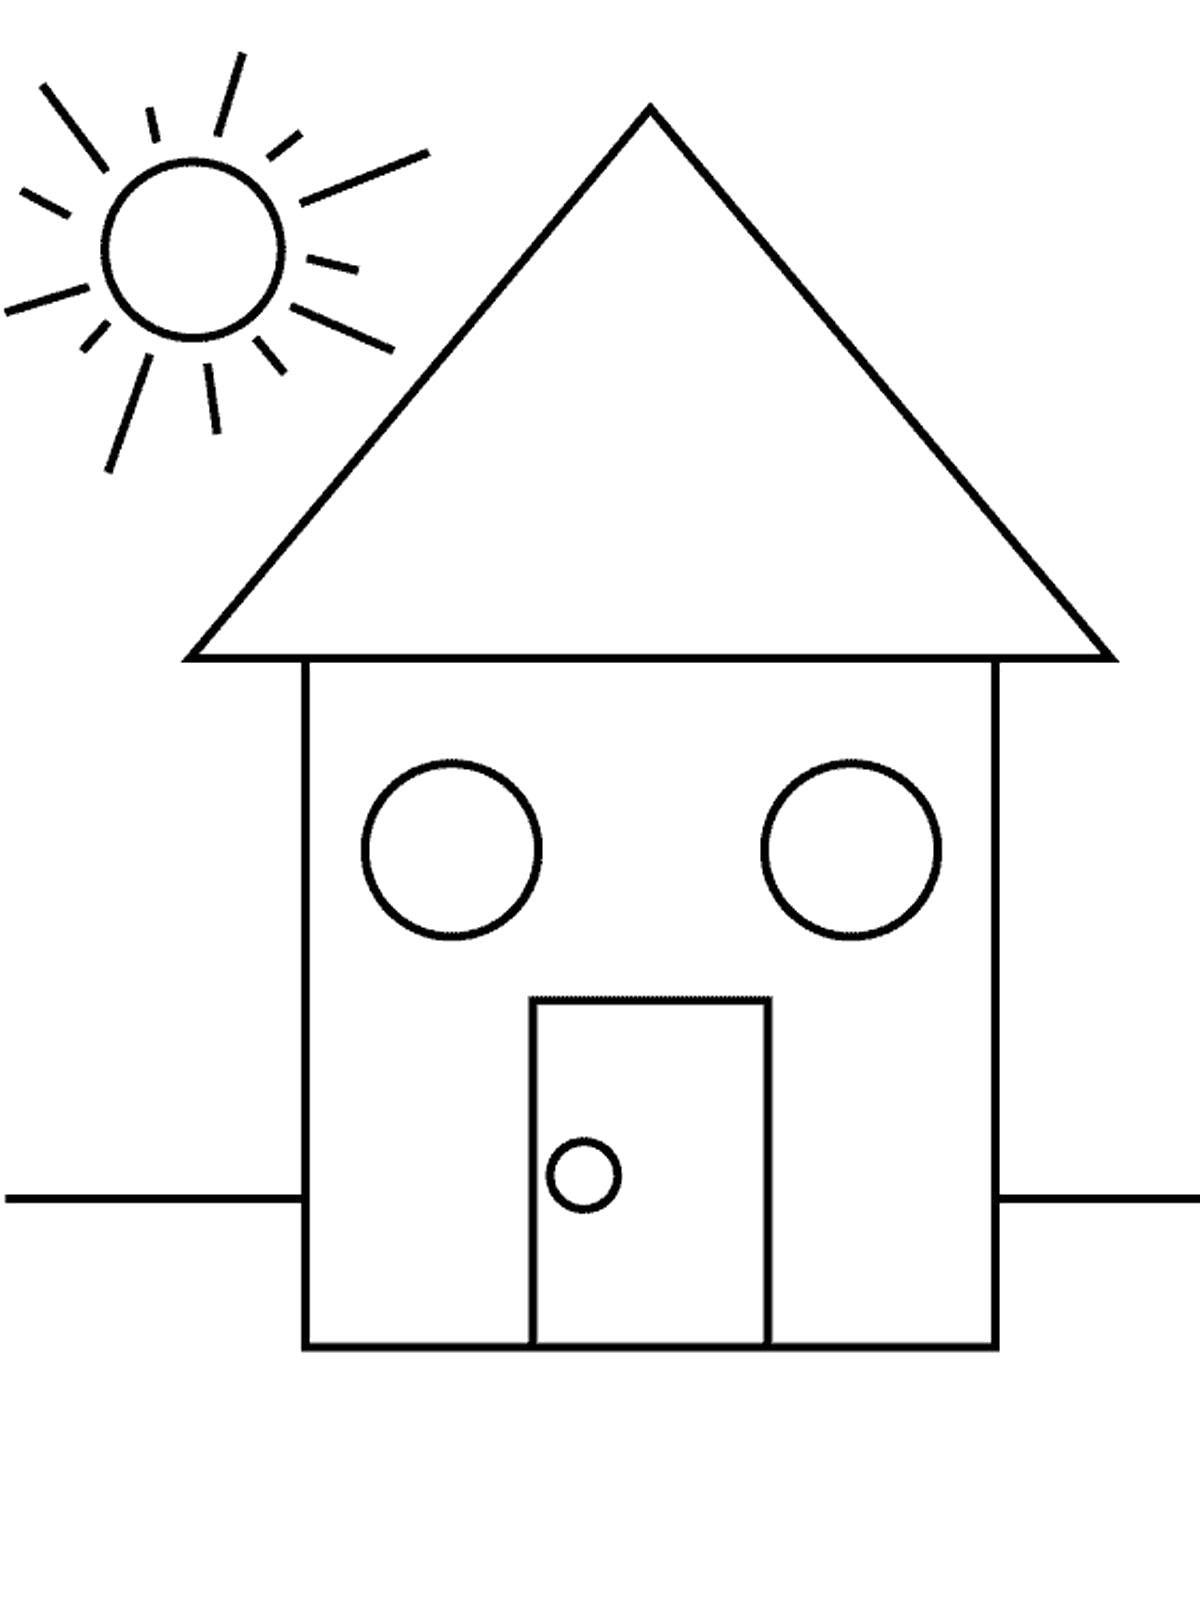 Раскраска дом из геометрических фигур. Скачать круг, квадрат, треугольник.  Распечатать геометрические фигуры